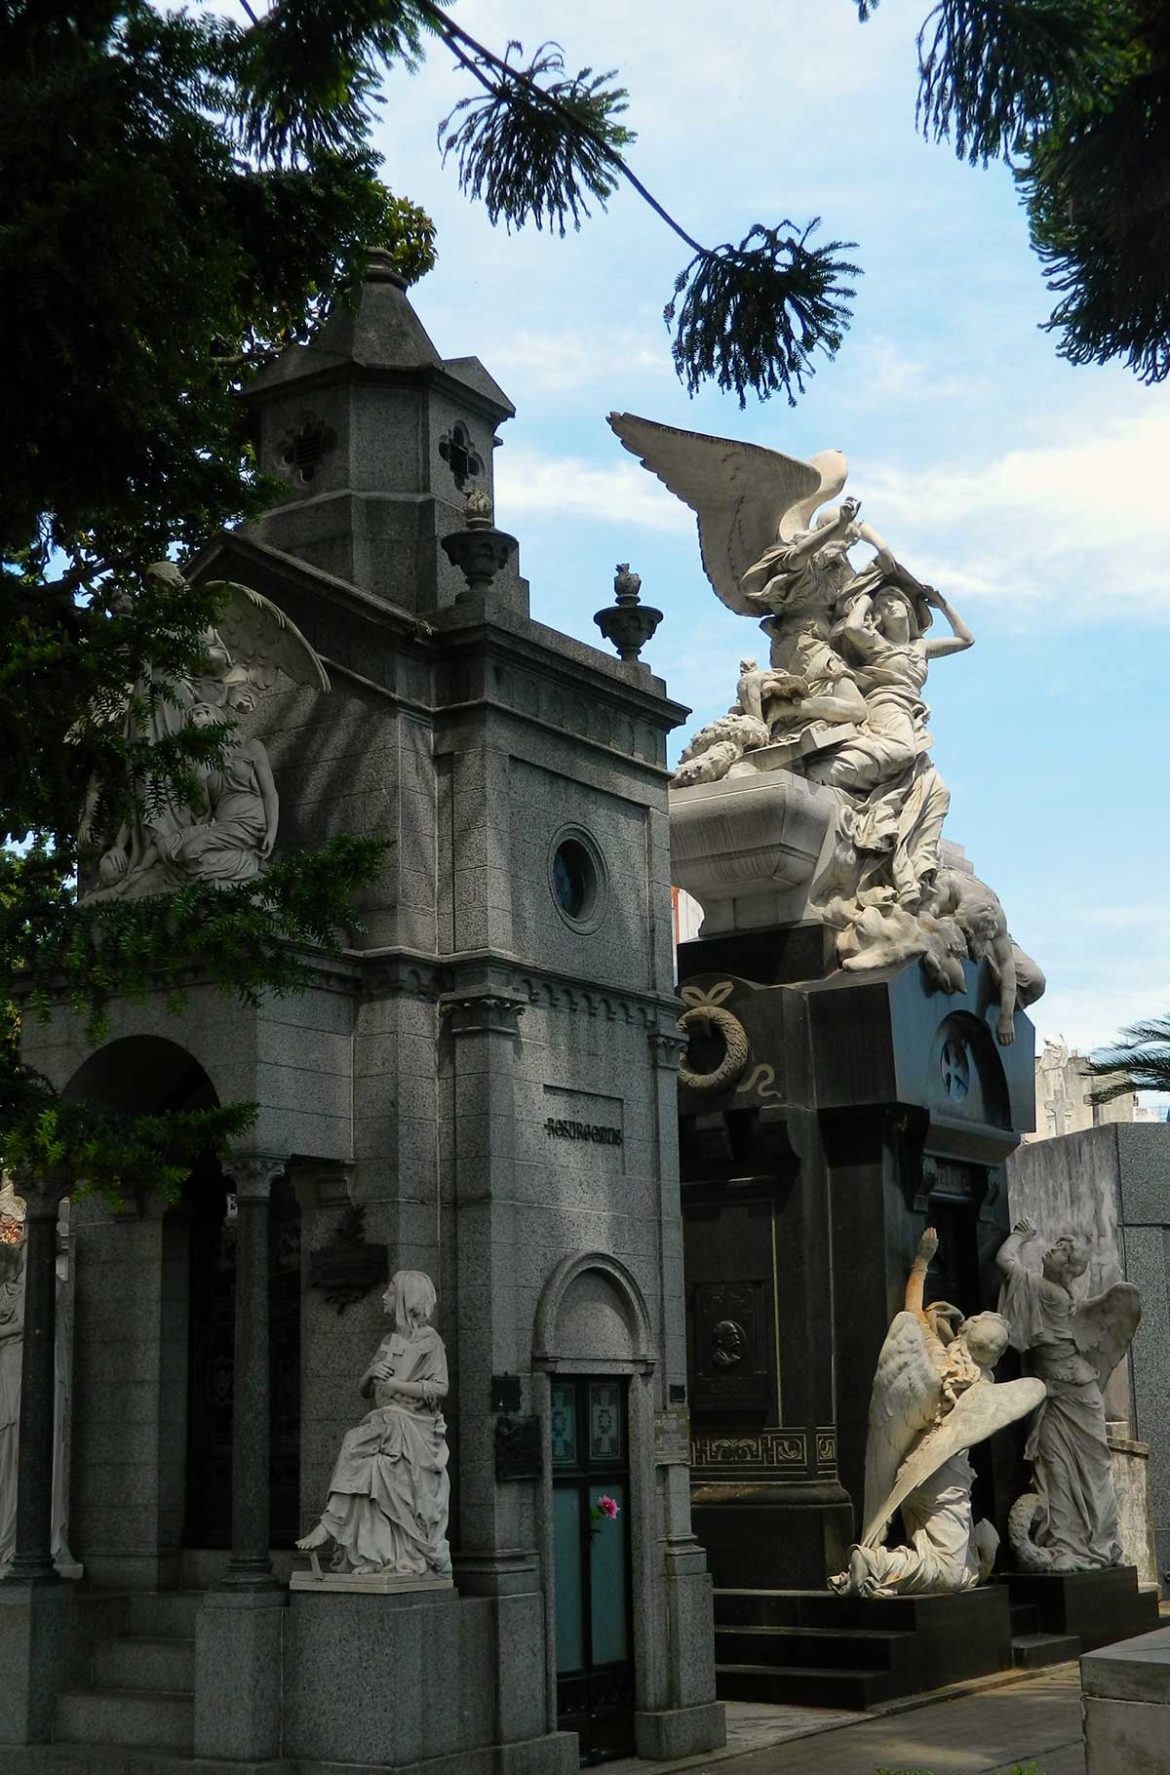 Fotos de Buenos Aires - Cemitério da Recoleta